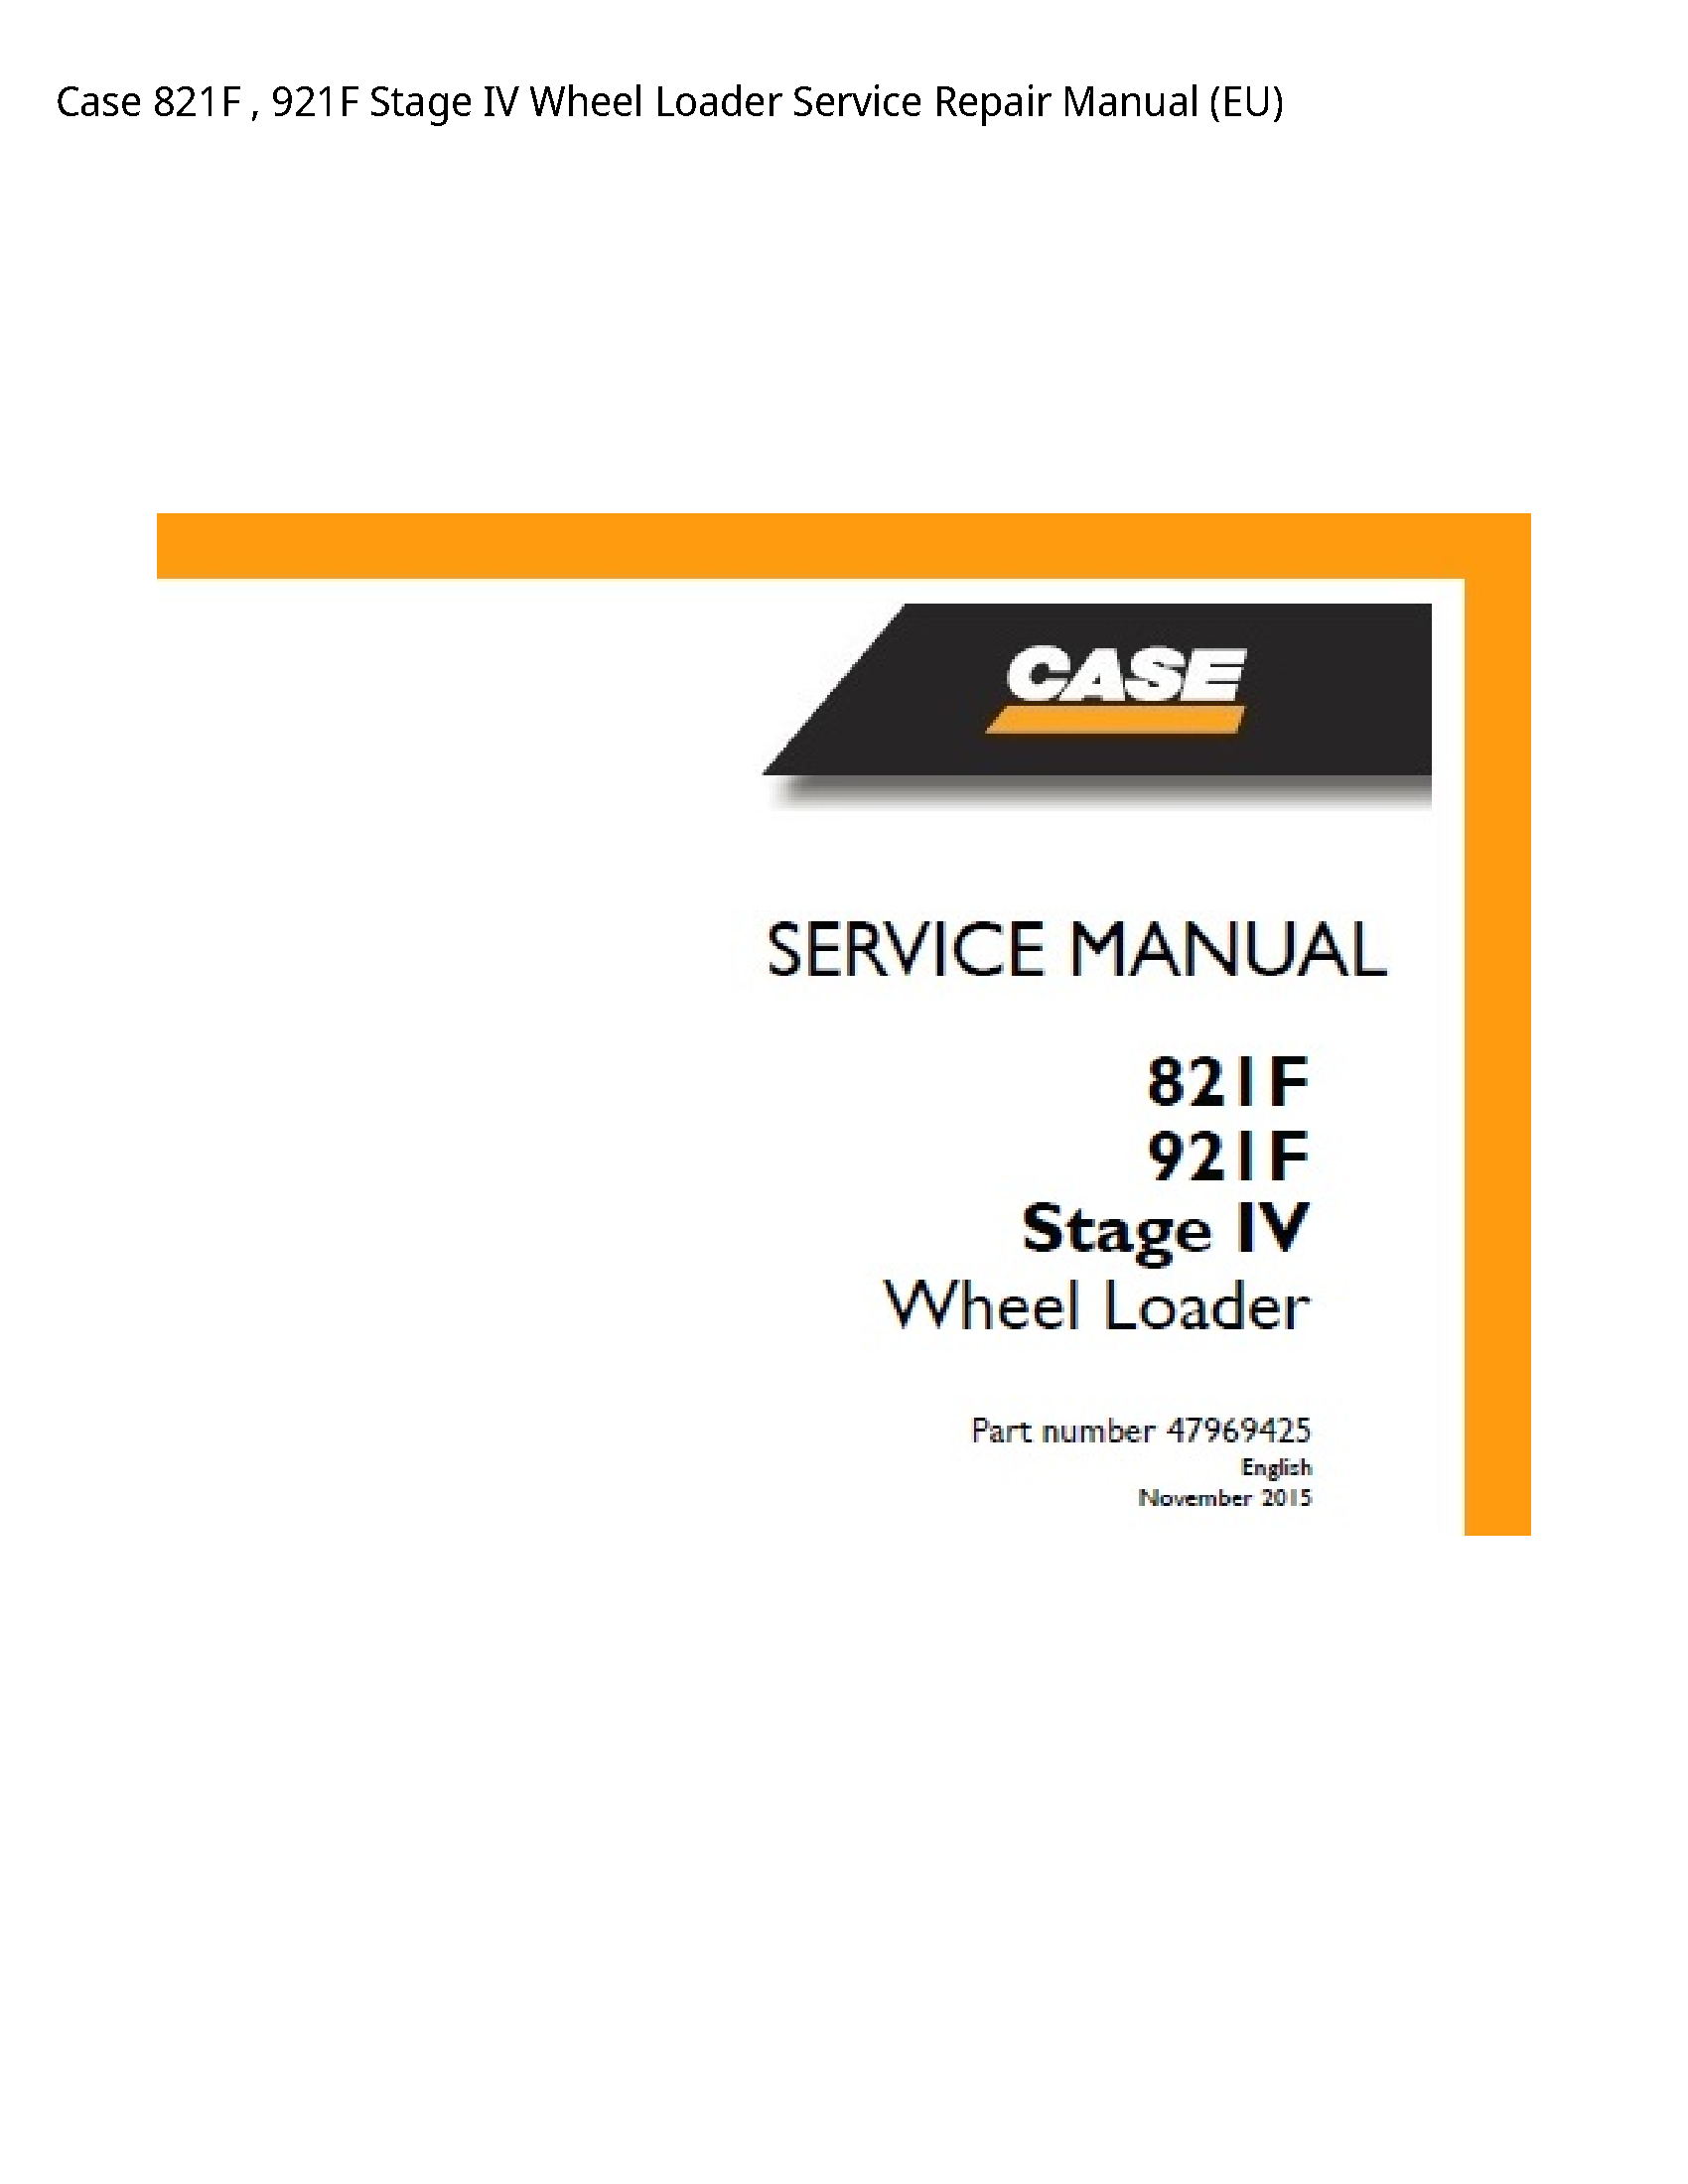 Case/Case IH 821F Stage IV Wheel Loader manual